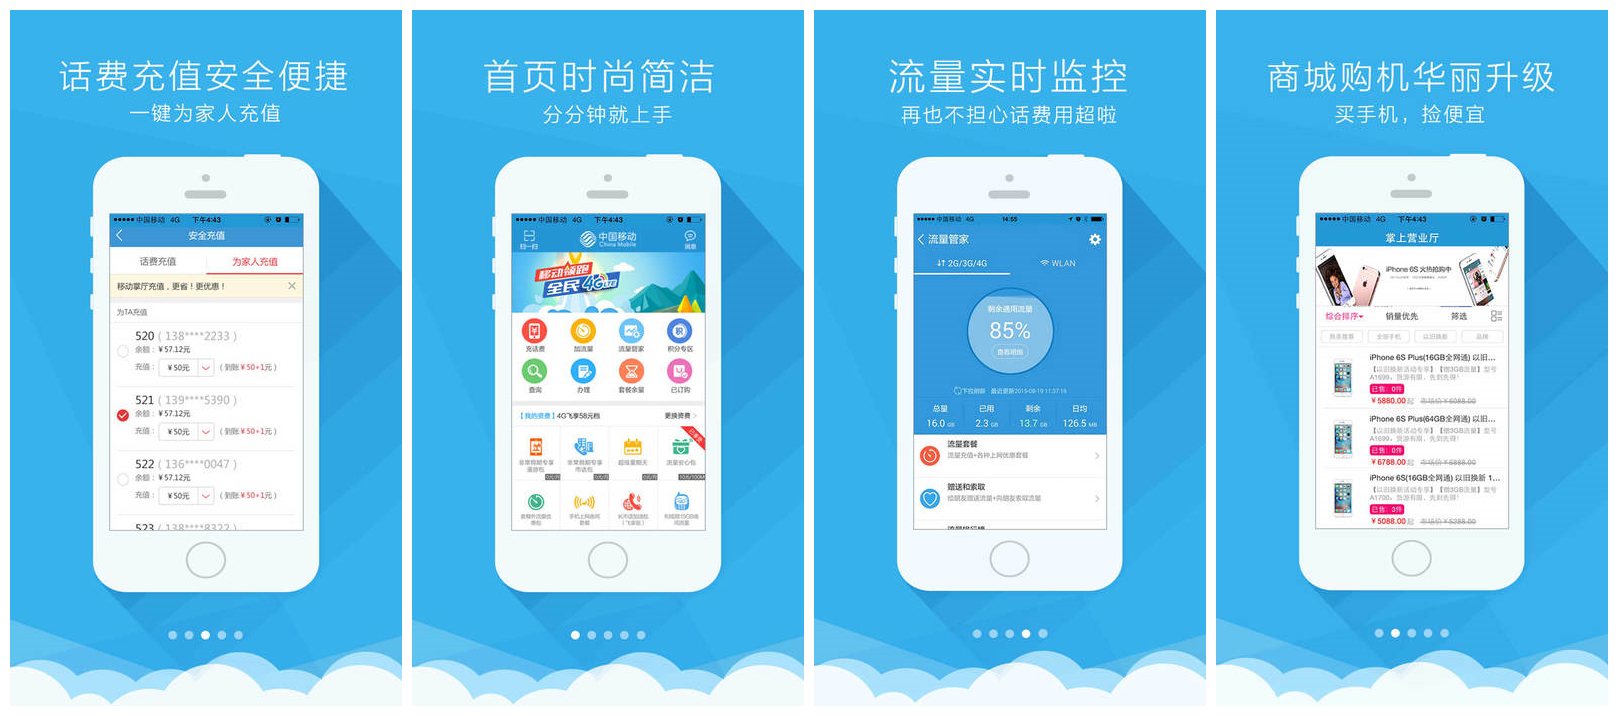 重庆移动手机营业厅app